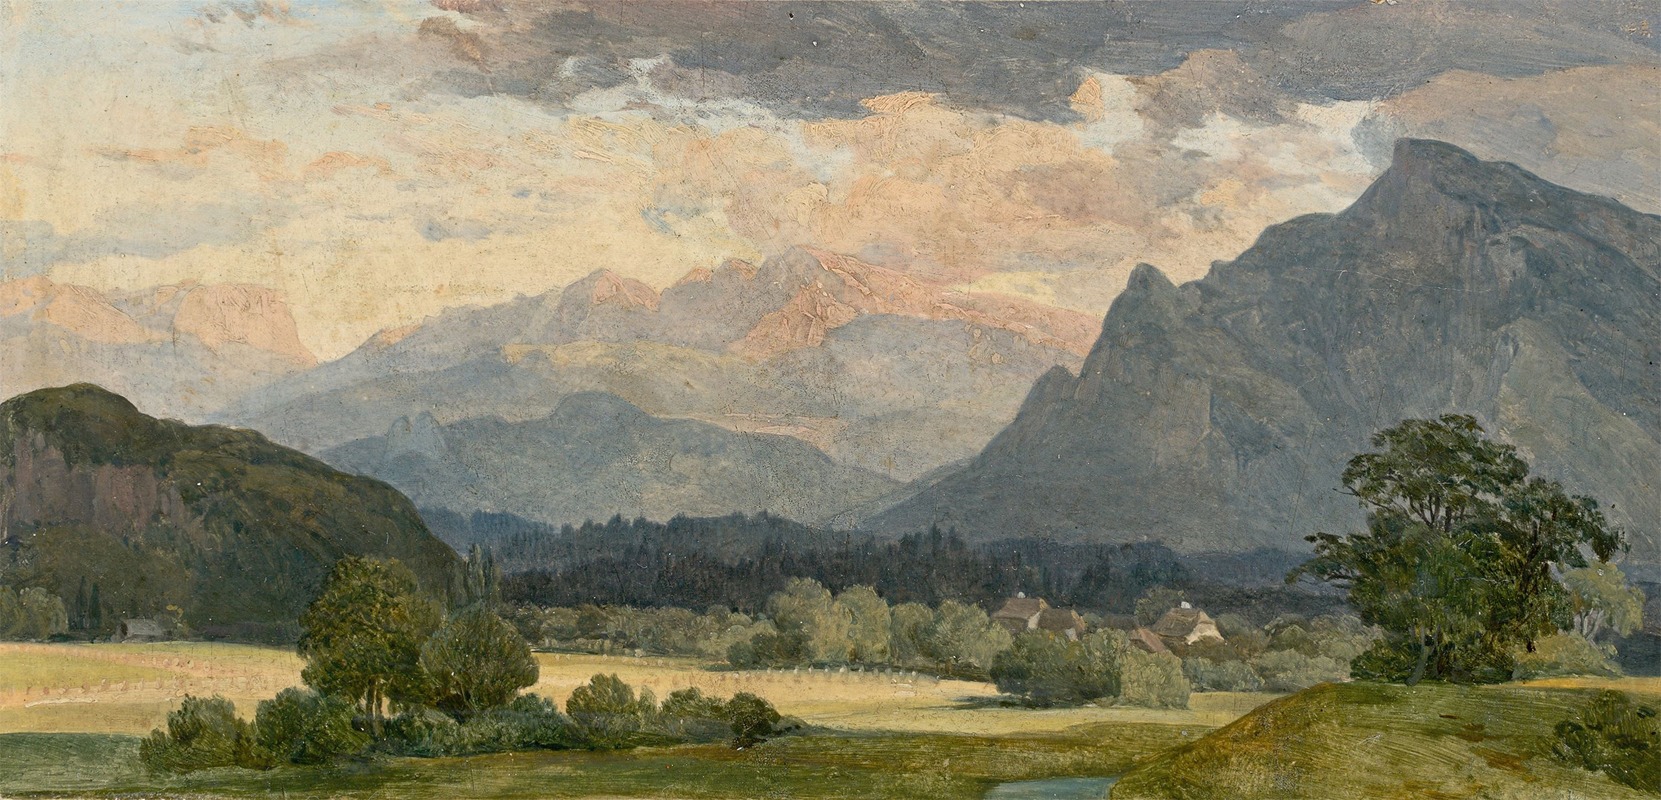 August Heinrich - View of the Tennengebirge mountains near Salzburg